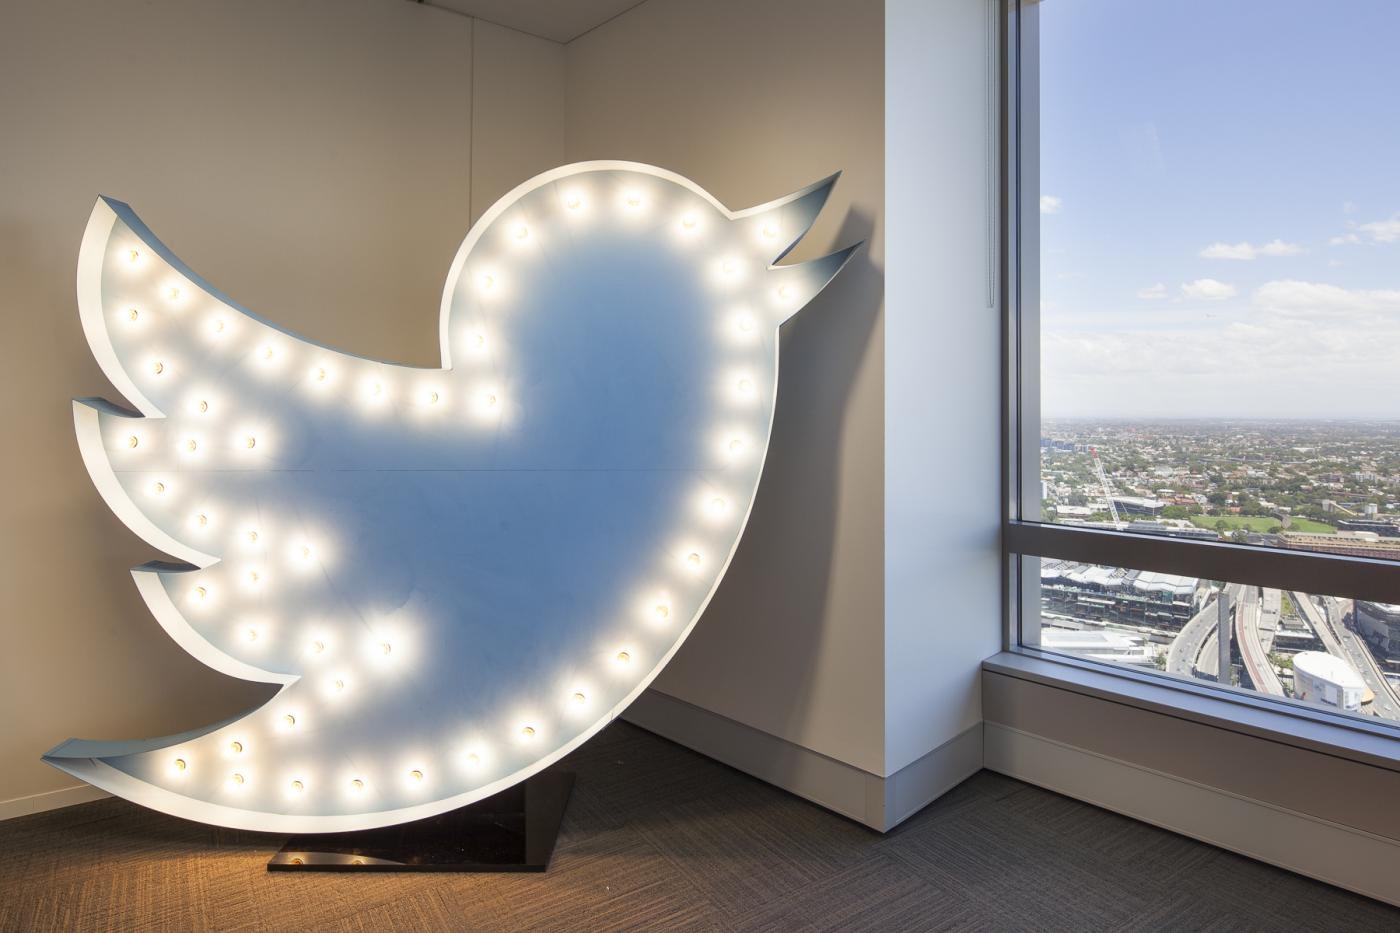 Twitter testa recurso para esconder respostas de tweets